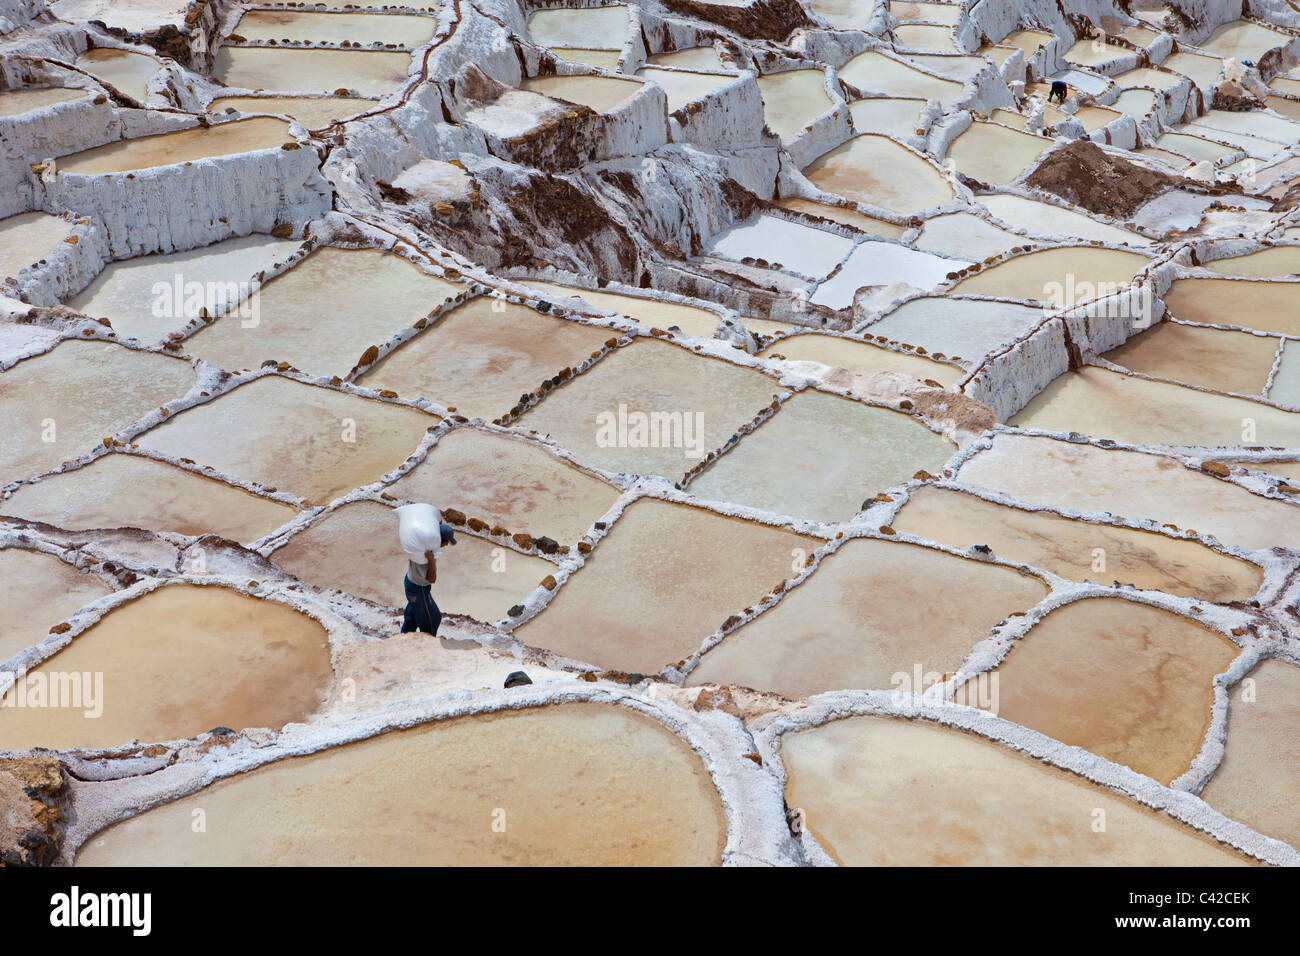 Pérou, Maras, sel de l'exploitation minière, les personnes travaillant dans les marais salants. Banque D'Images